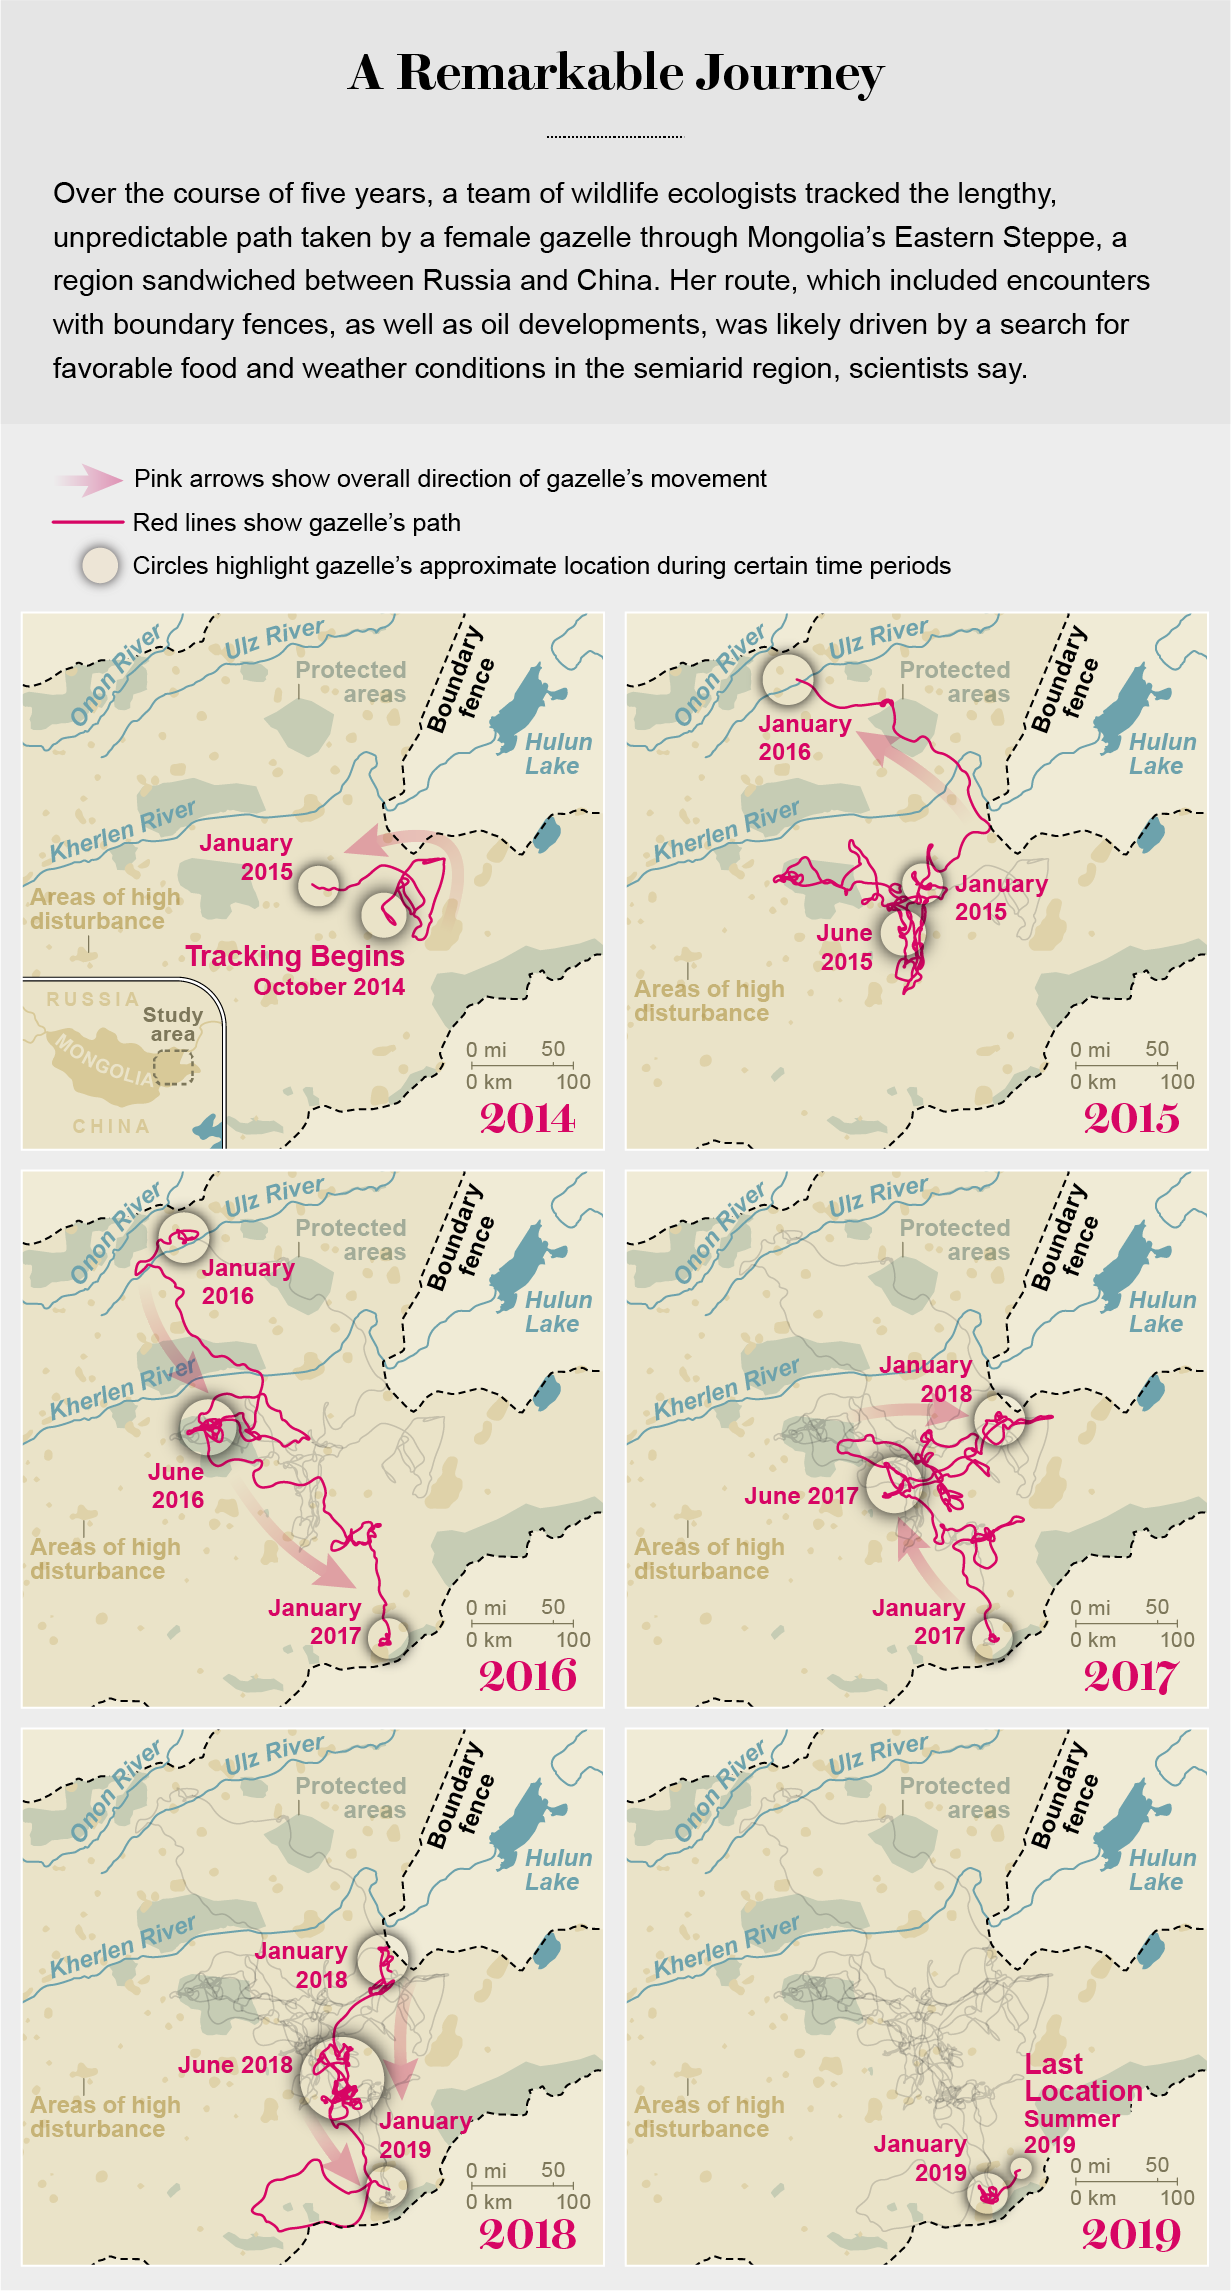 Los mapas muestran la ruta de movimiento de la gacela a través del este de Mongolia desde el comienzo de la persecución en 2014 hasta su muerte en 2019.